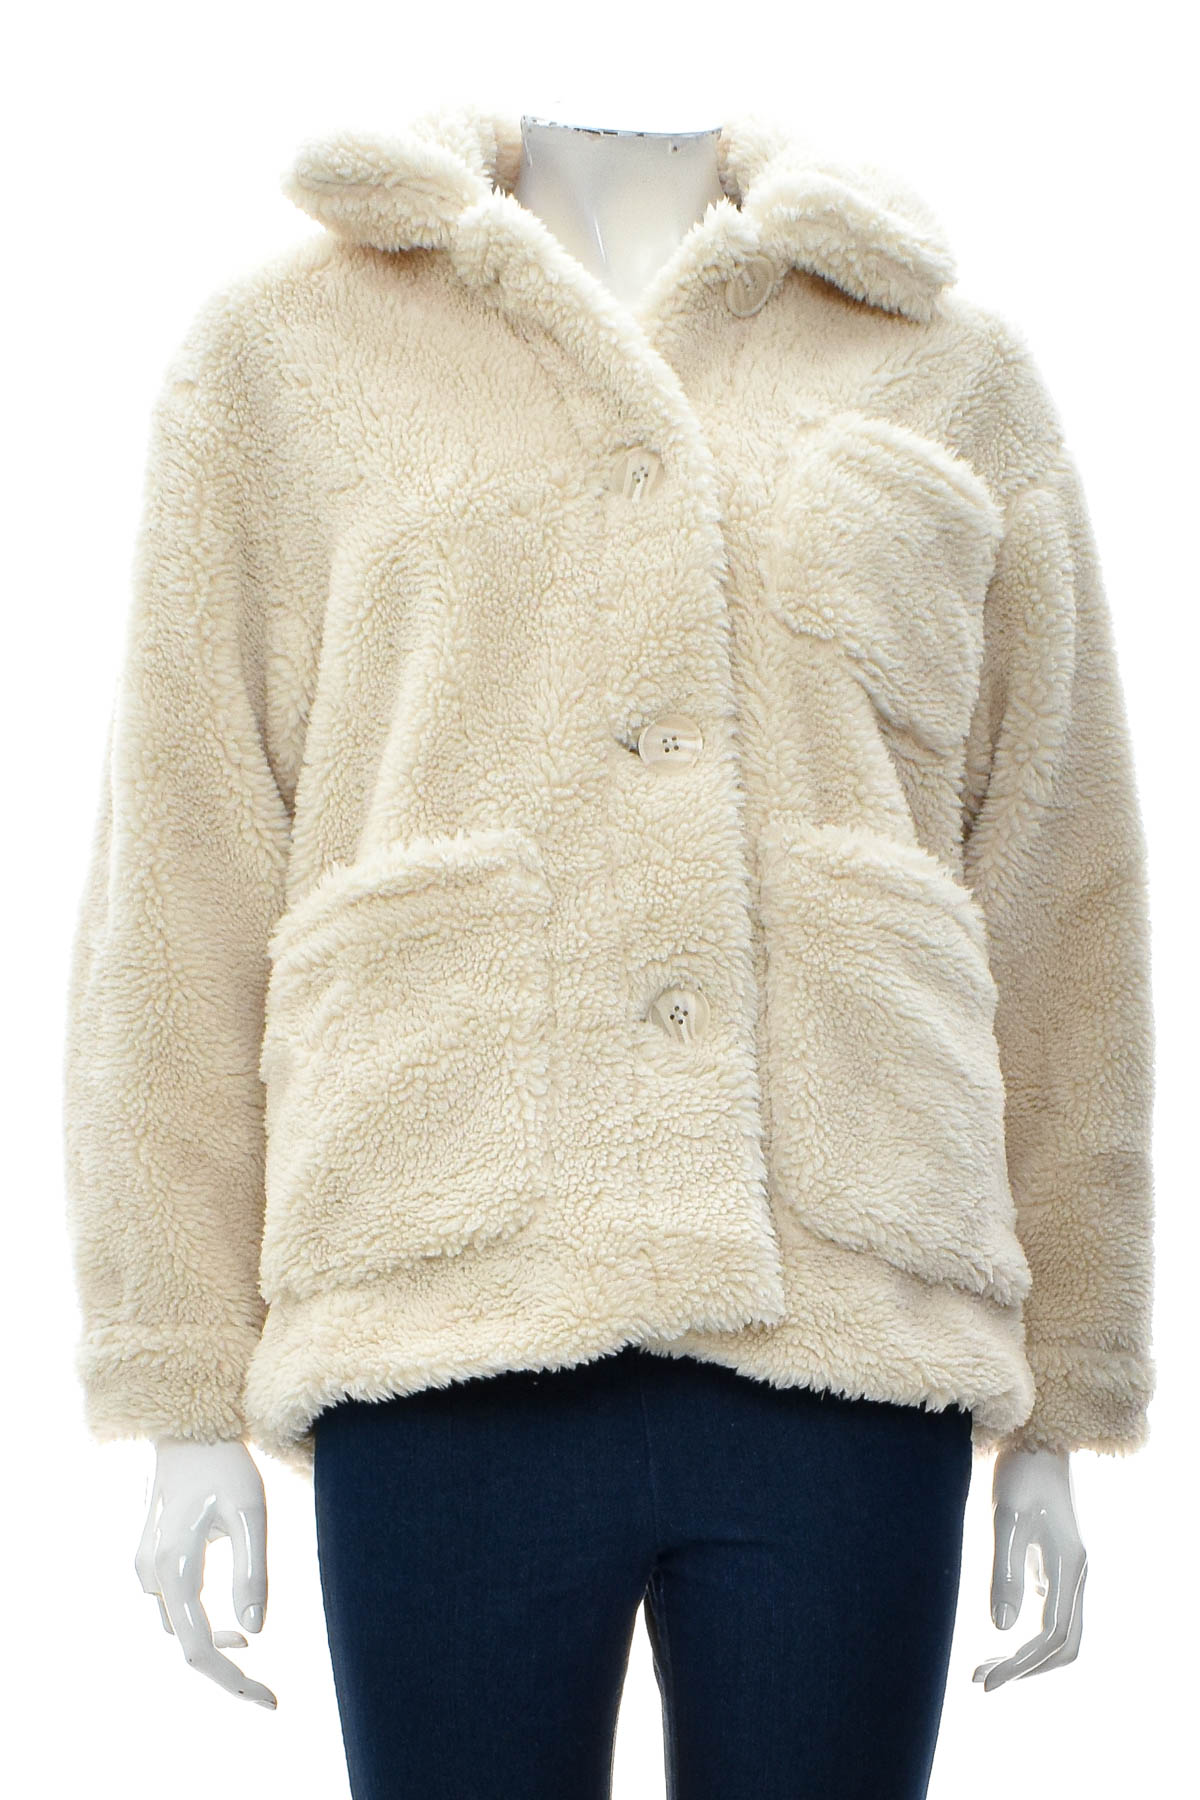 Γυναικείο παλτό - Pull & Bear - 0